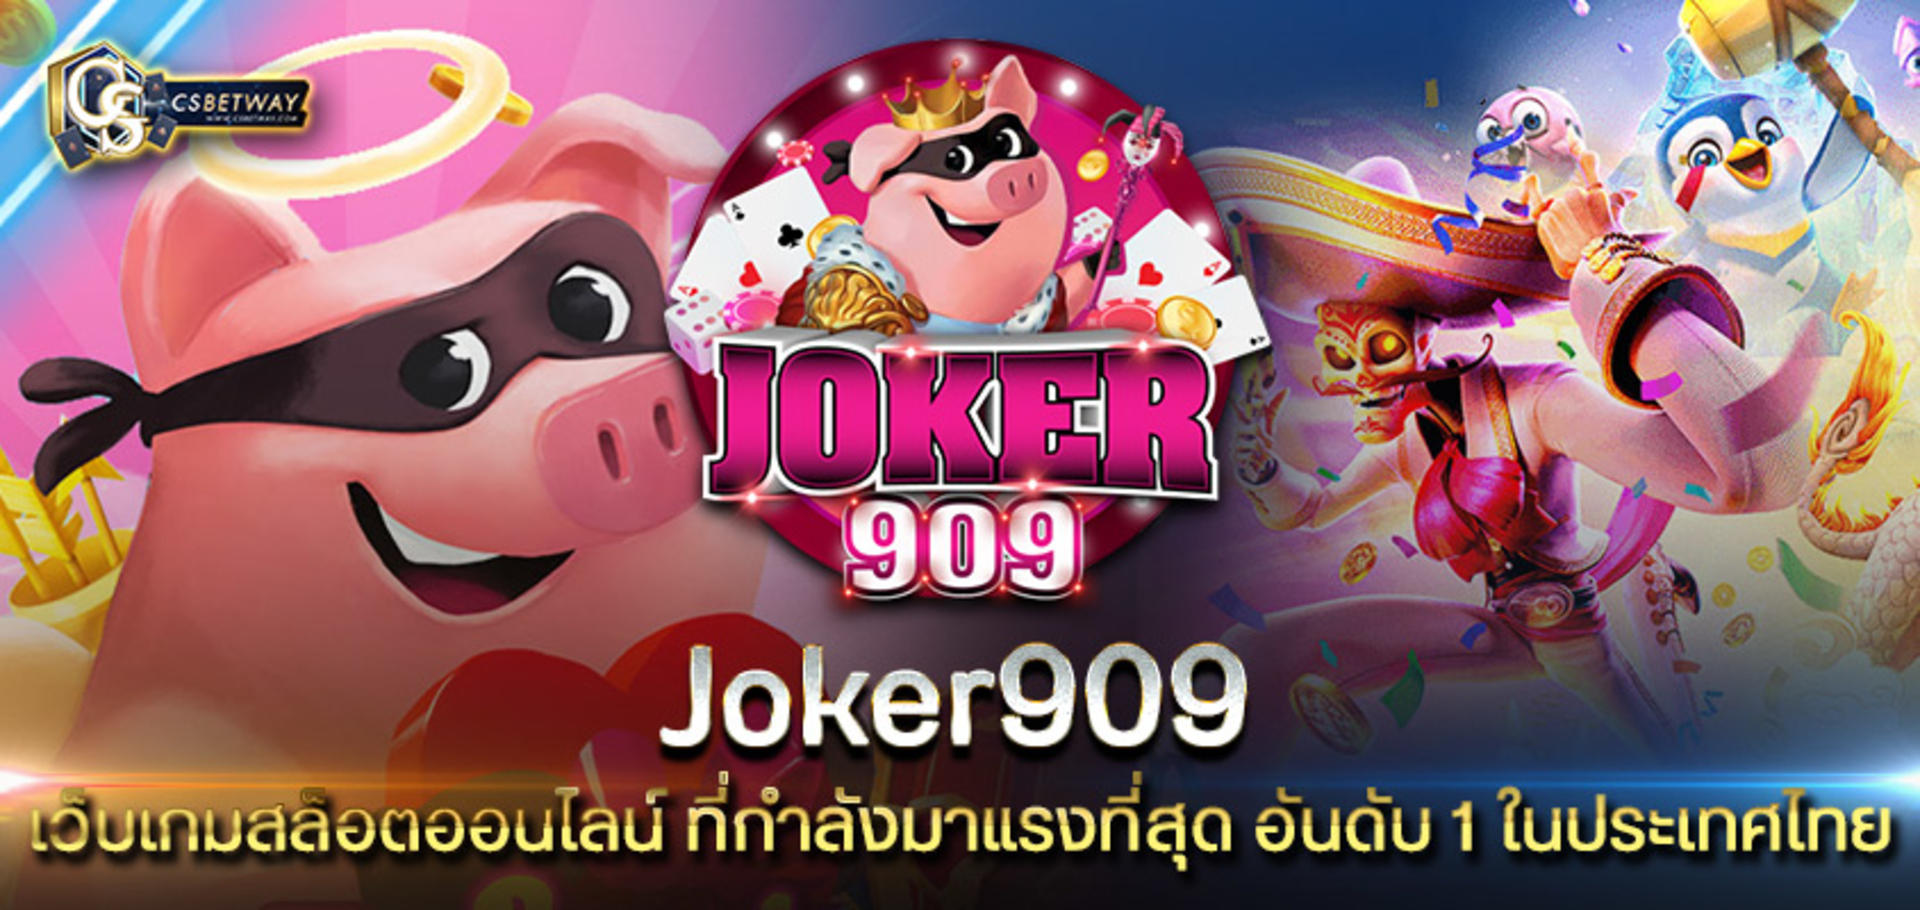 joker909 เว็บเกมสล็อตออนไลน์ ที่กำลังมาแรงที่สุด อันดับ 1 ในประเทศไทย โจ๊กเกอร์ 909 เกมสล็อตคุณภาพระดับสากล